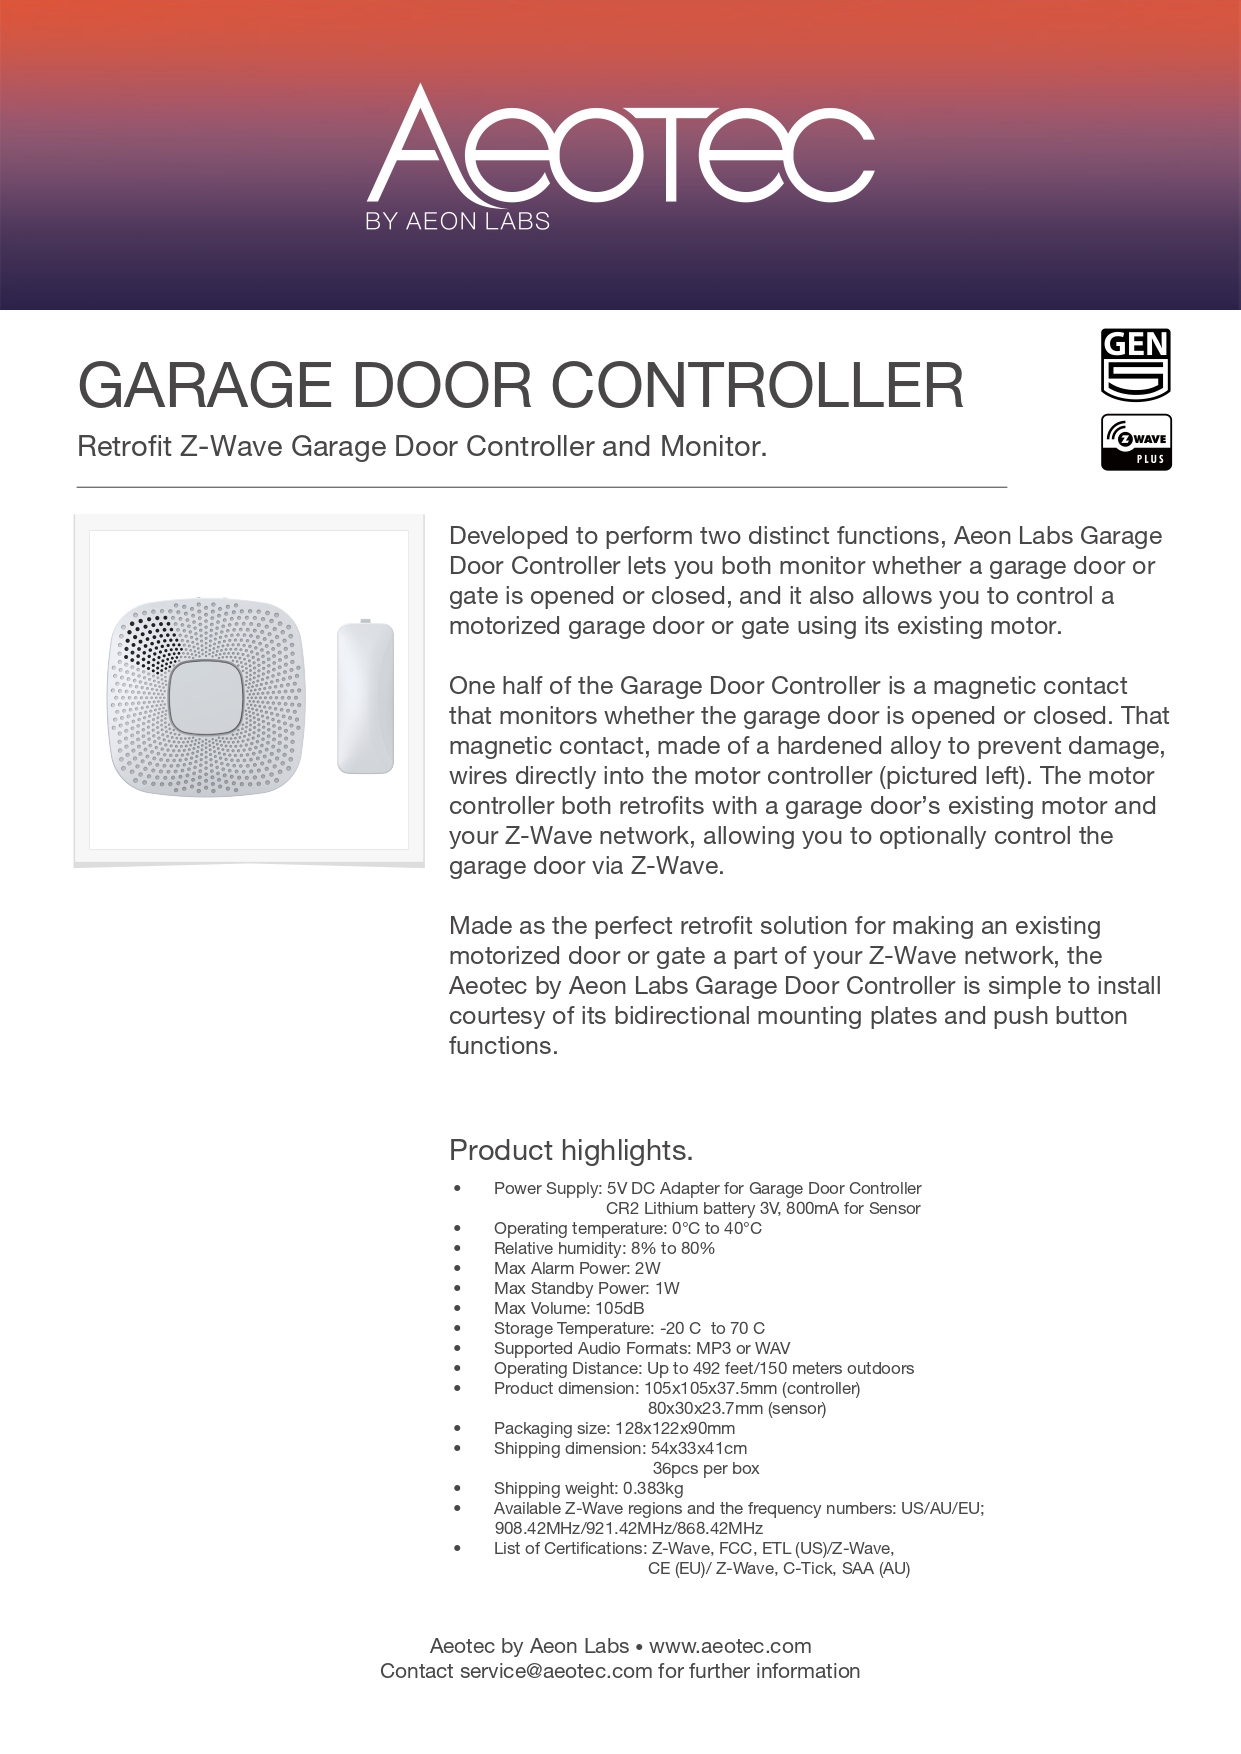 Aeotec Garage Door Controller Gen5